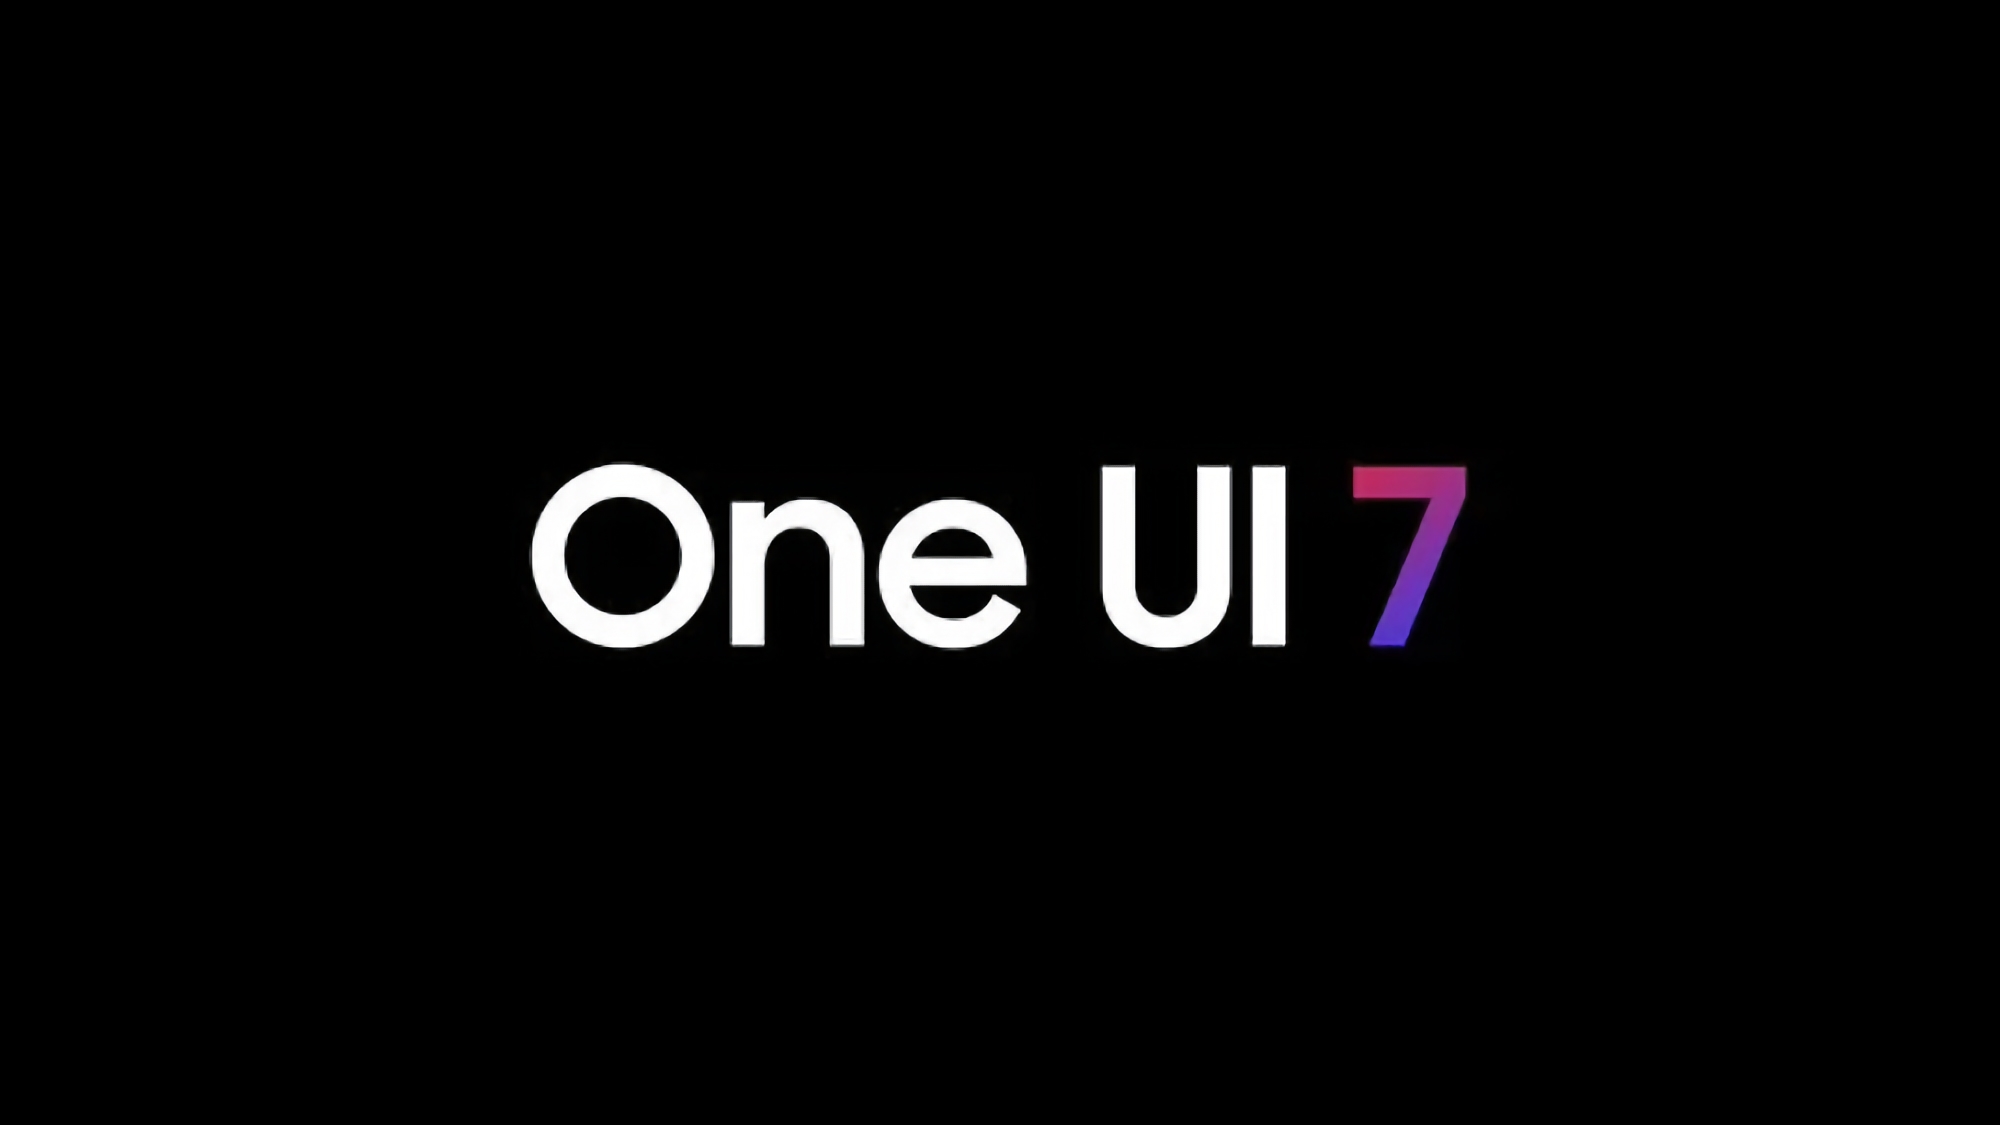 Insider: Samsung udostępni One UI 7 Beta w poniedziałek 29 lipca